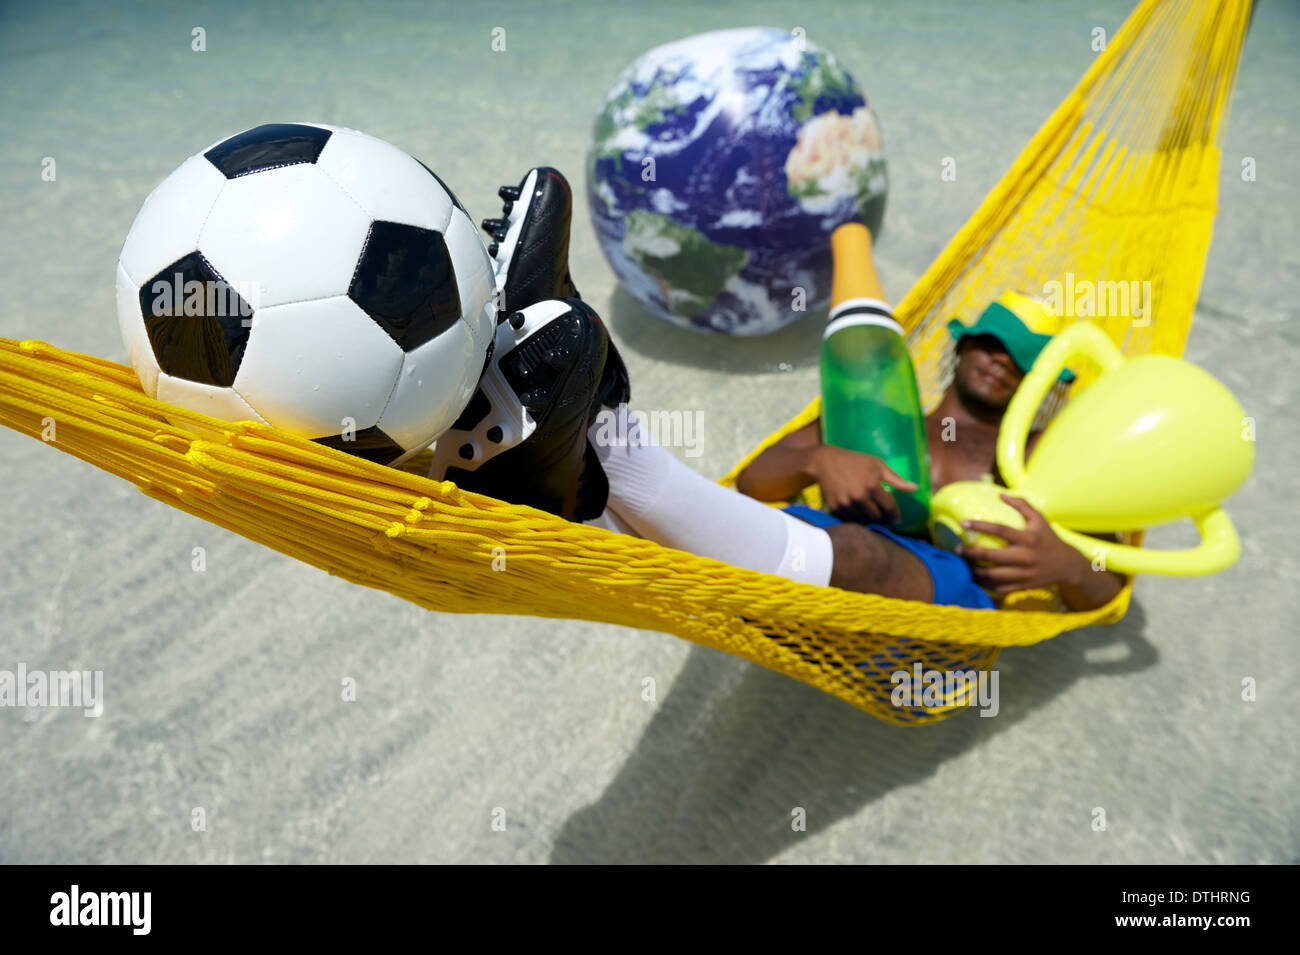 Le joueur de soccer brésilien Champion célébrer en vous relaxant dans son hamac avec football, bouteille de champagne, et le trophée que le monde Banque D'Images